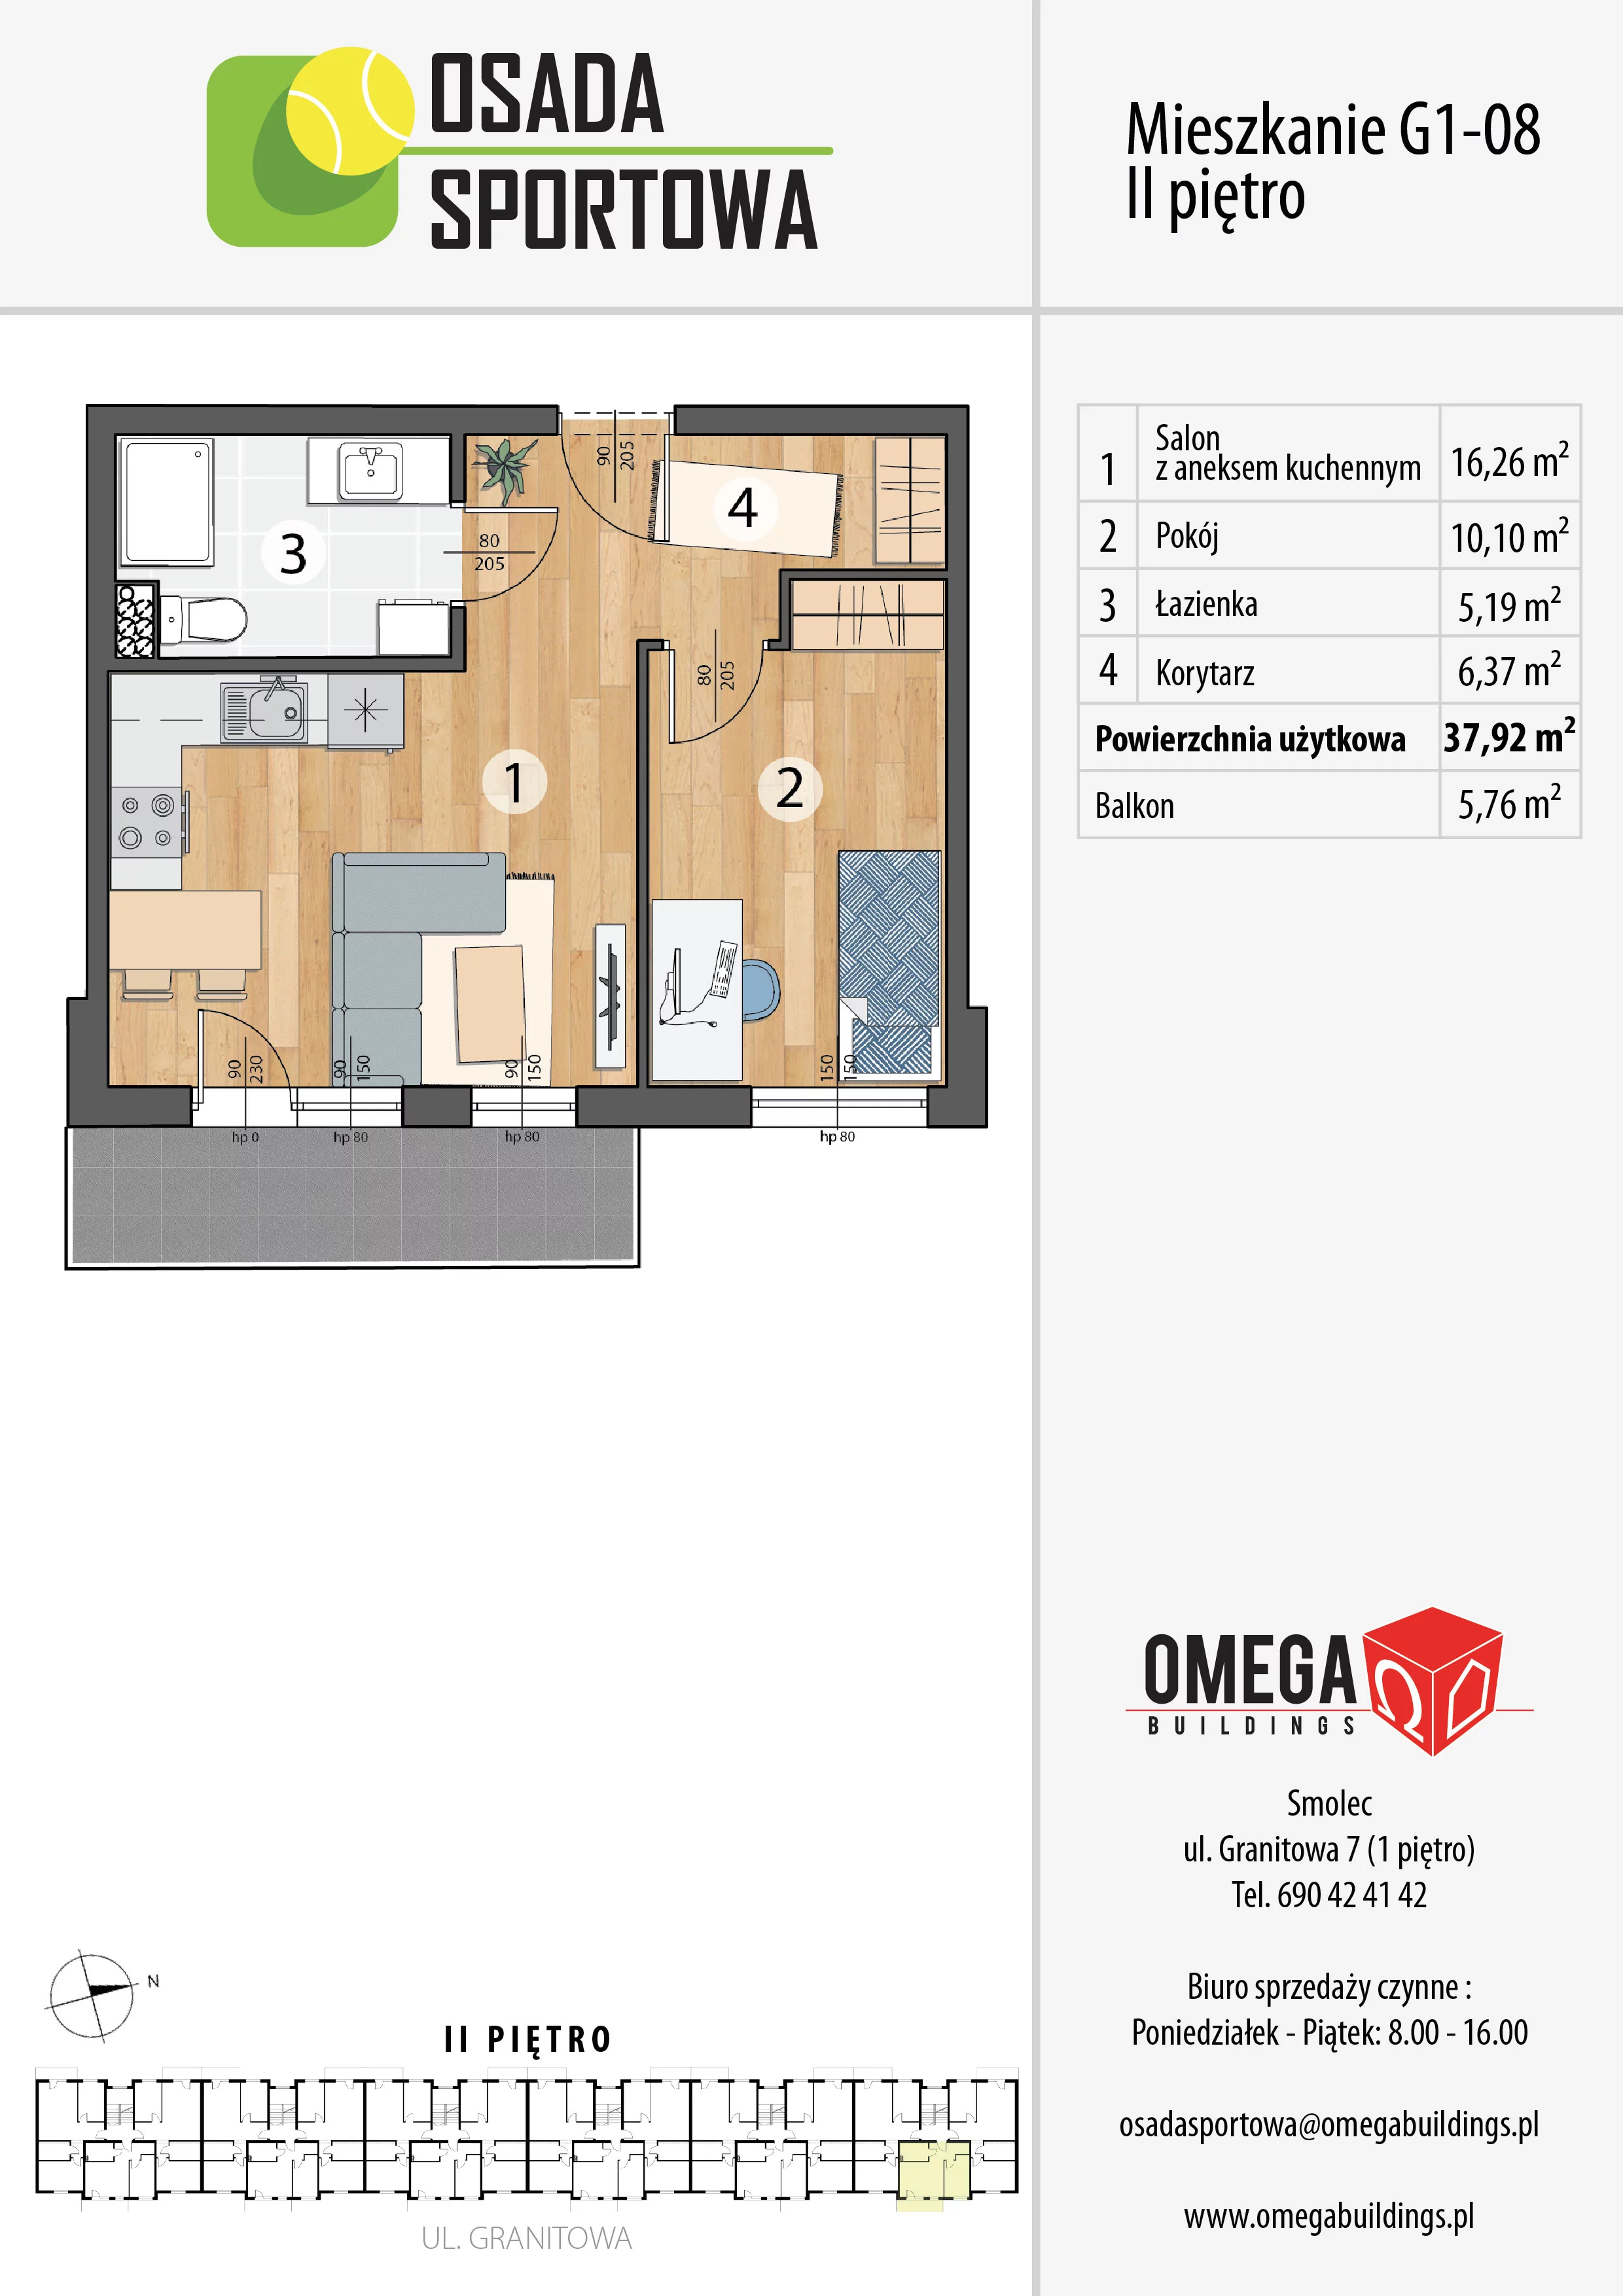 Mieszkanie 37,92 m², piętro 2, oferta nr G1-08, Osada Sportowa Budynek G, Smolec, ul. Granitowa 52-62